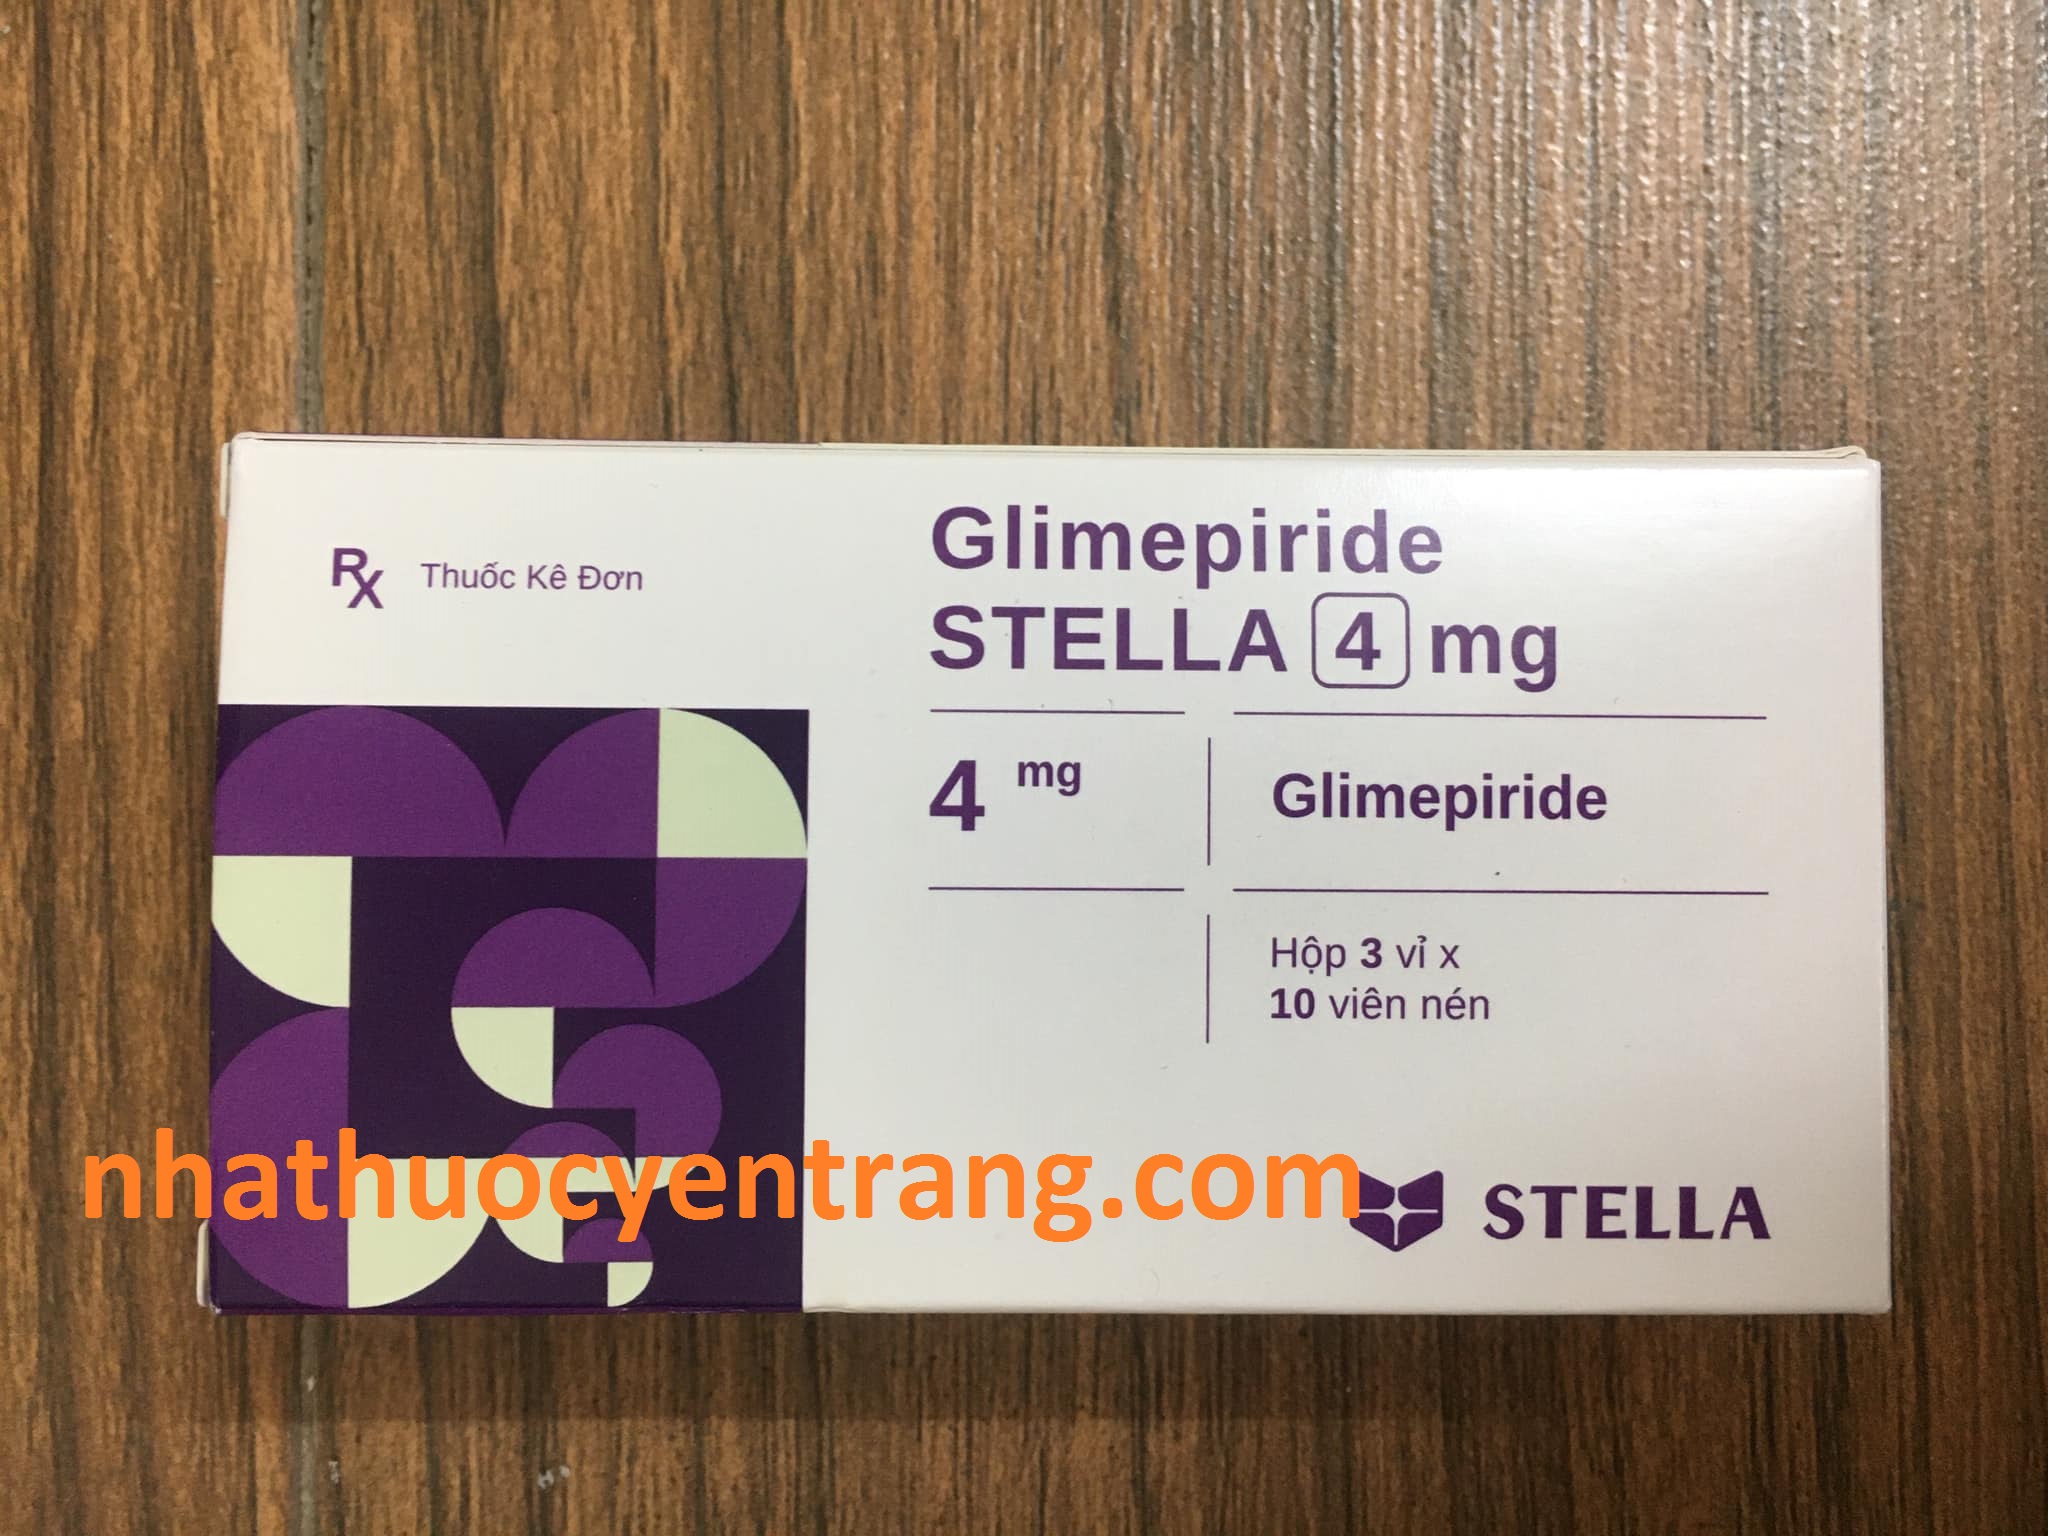 Glimepiride 4mg Stella